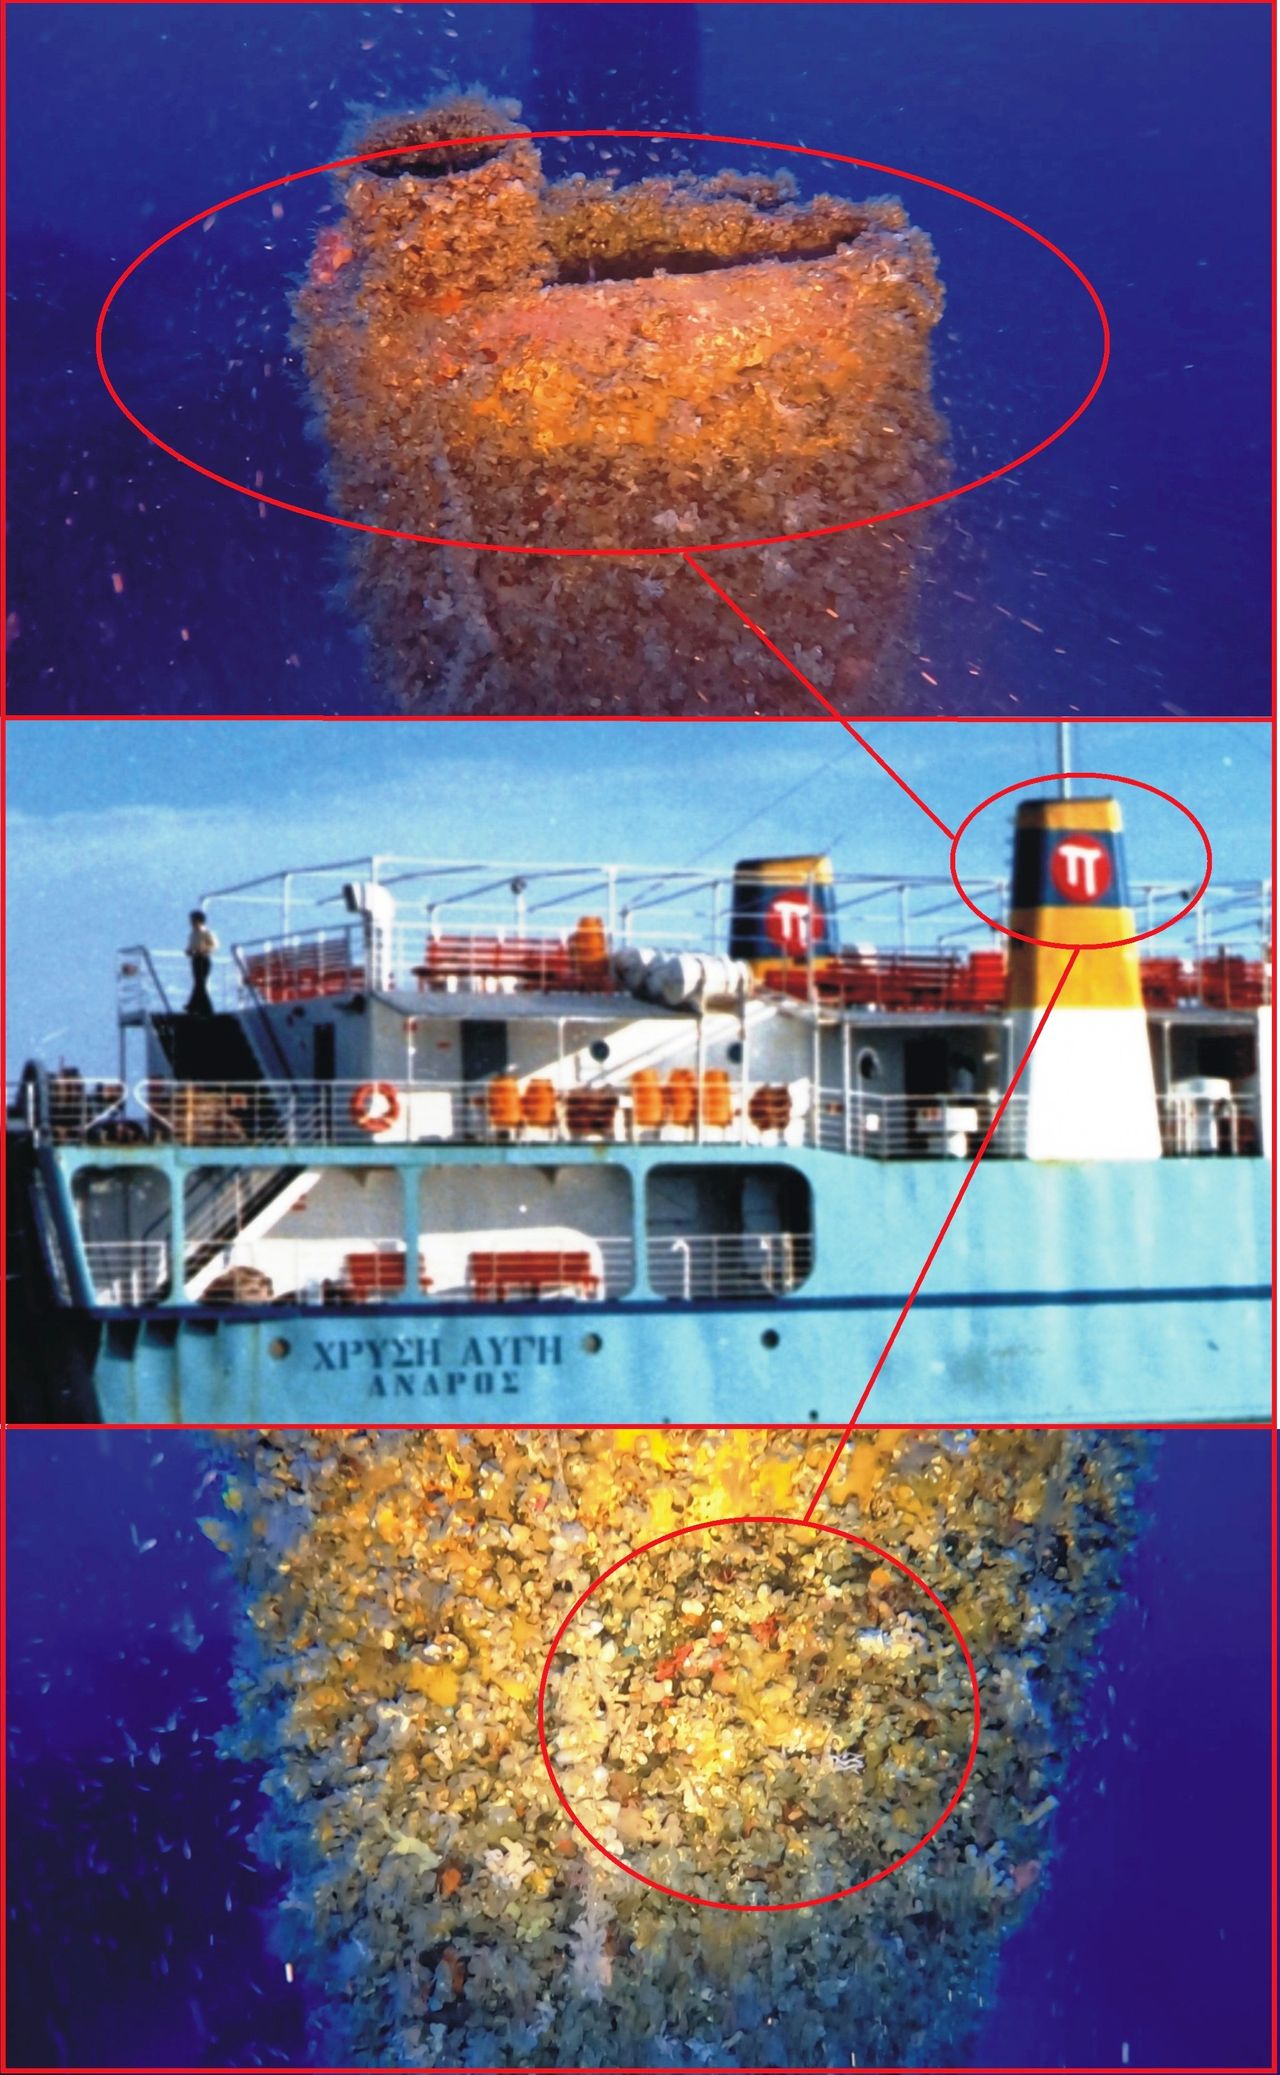 Υποβρύχιες φωτογραφίες του ναυαγίου σε αντιπαραβολή με τα σημεία αναγνώρισης και ταυτοποίησης.